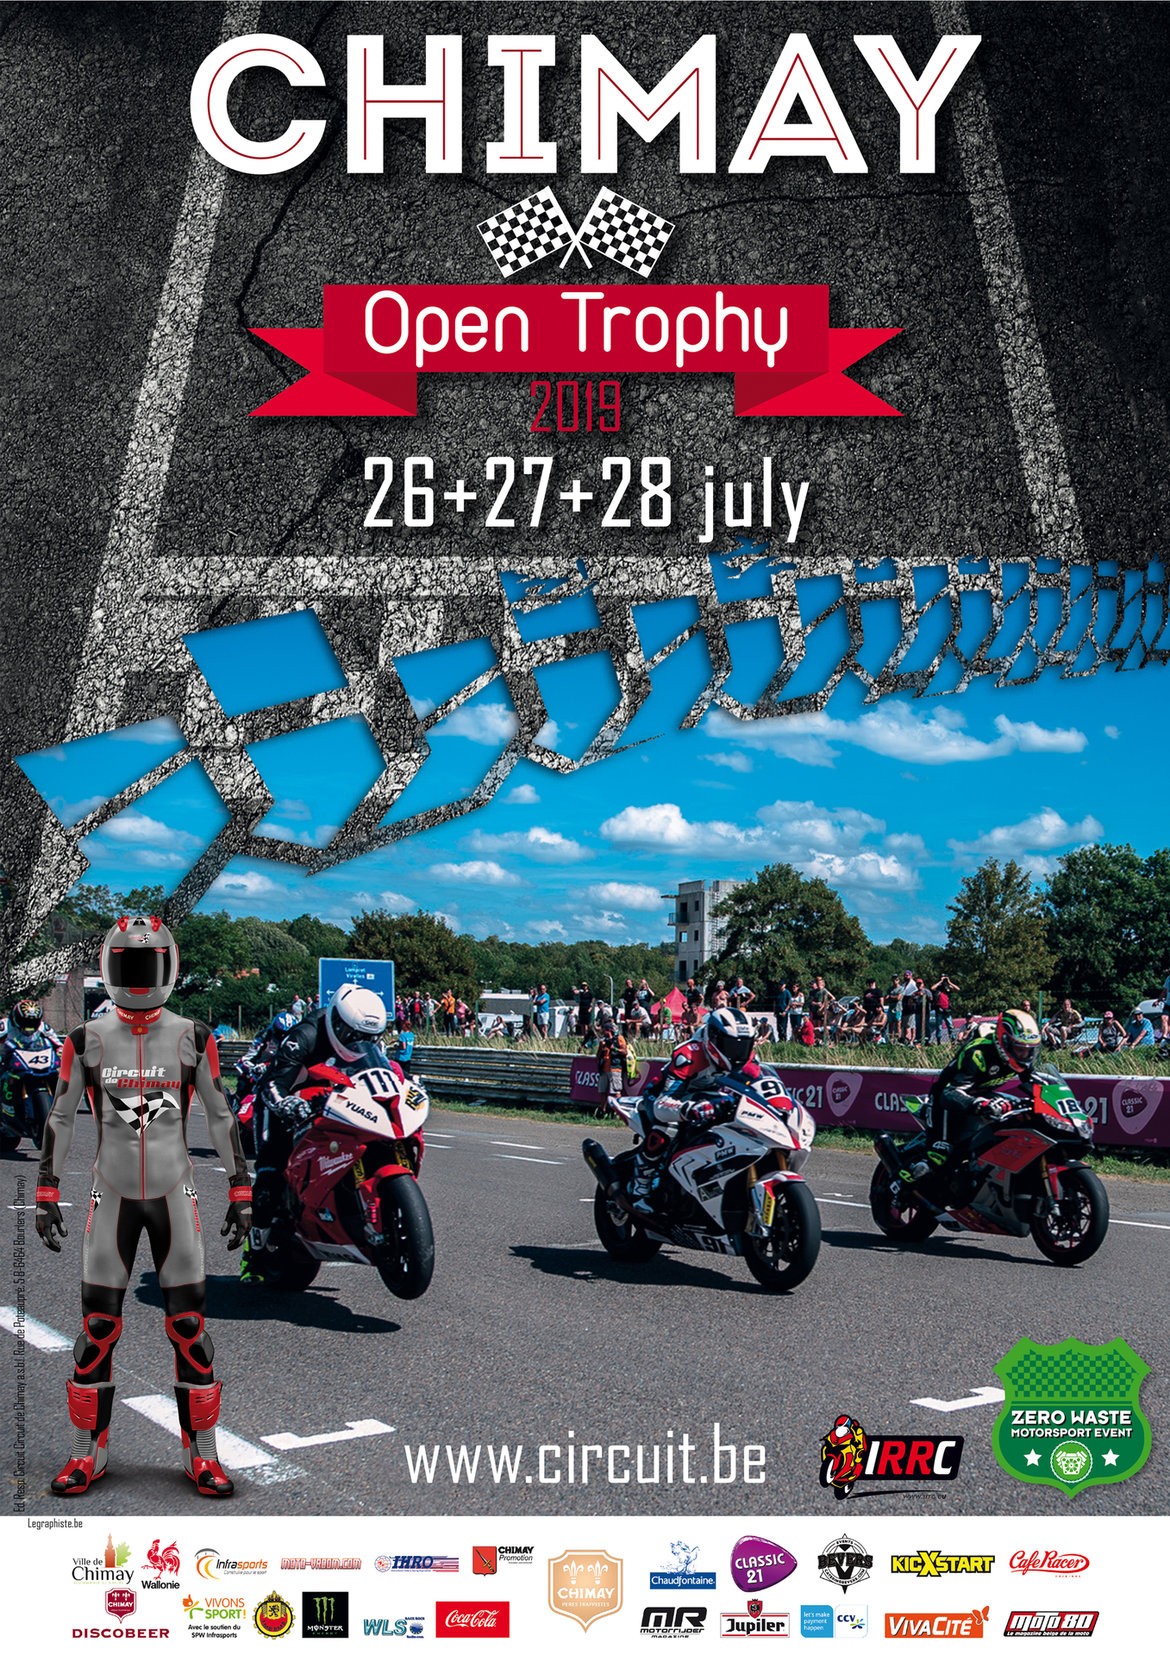 Chimay Open Trophy 2019